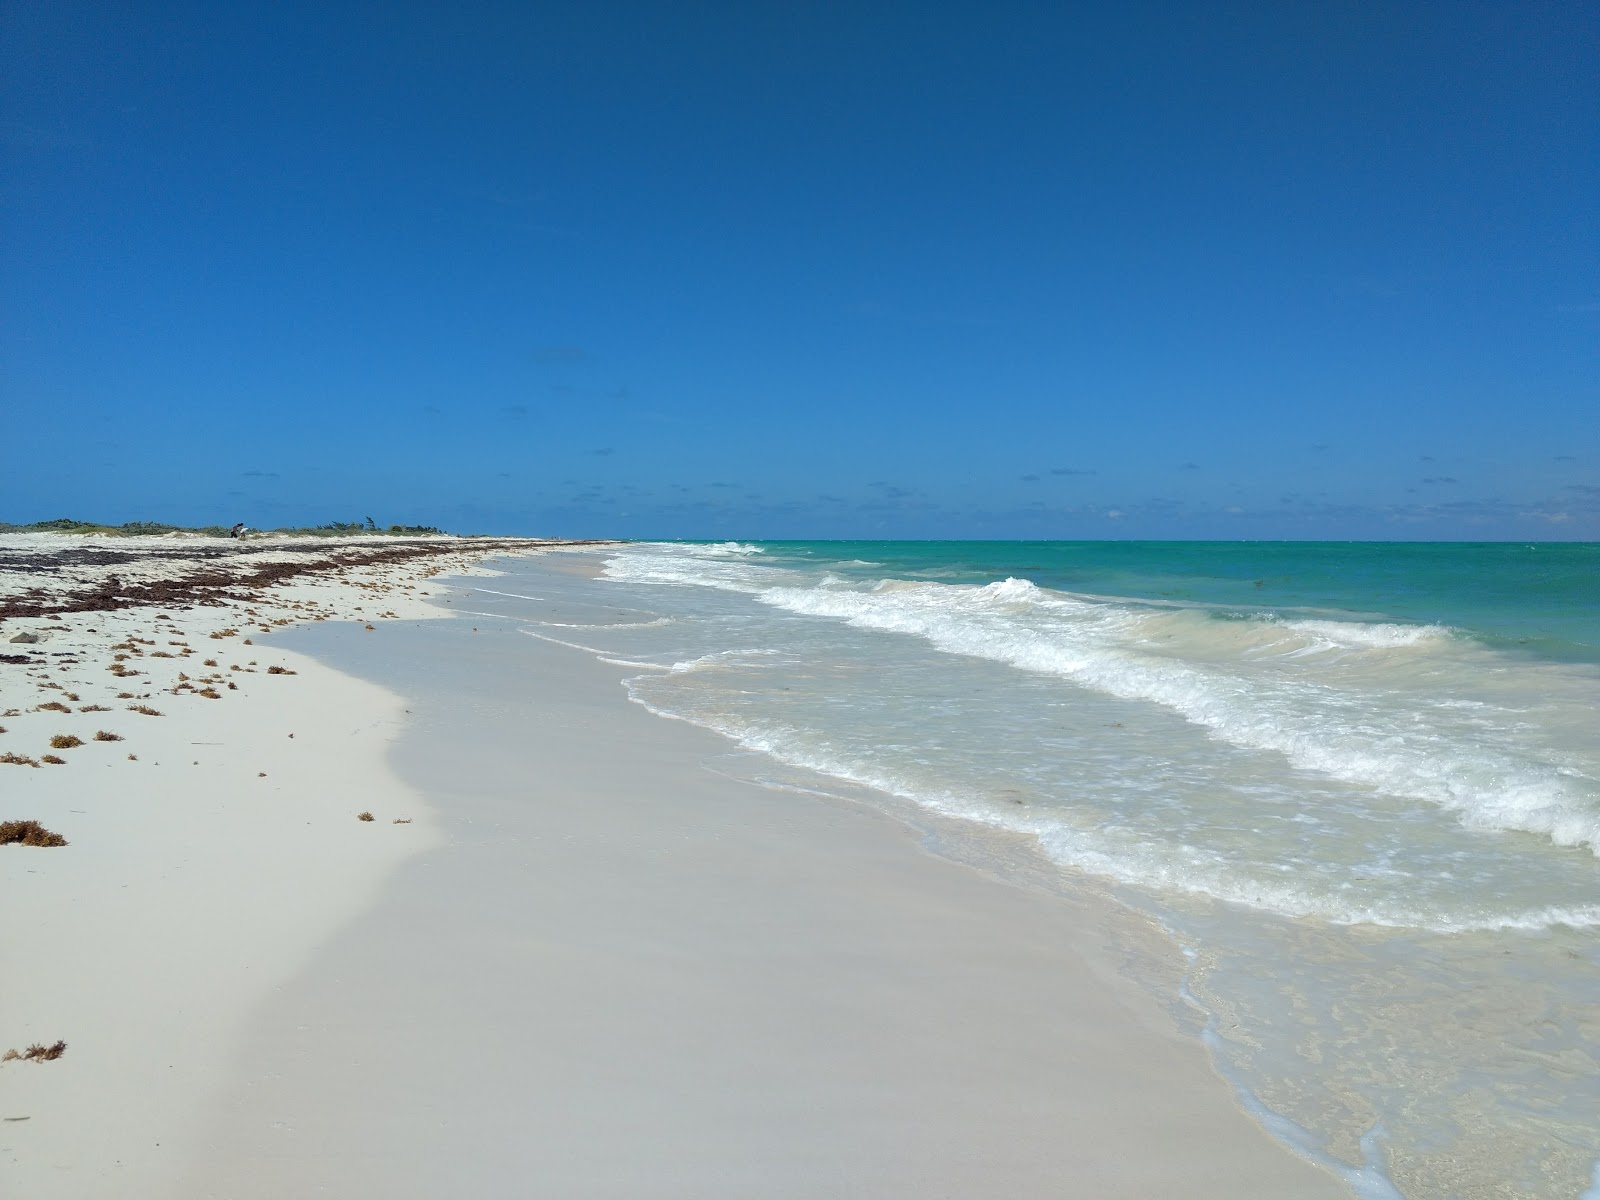 Fotografie cu Isla Blanca cu o suprafață de nisip fin strălucitor